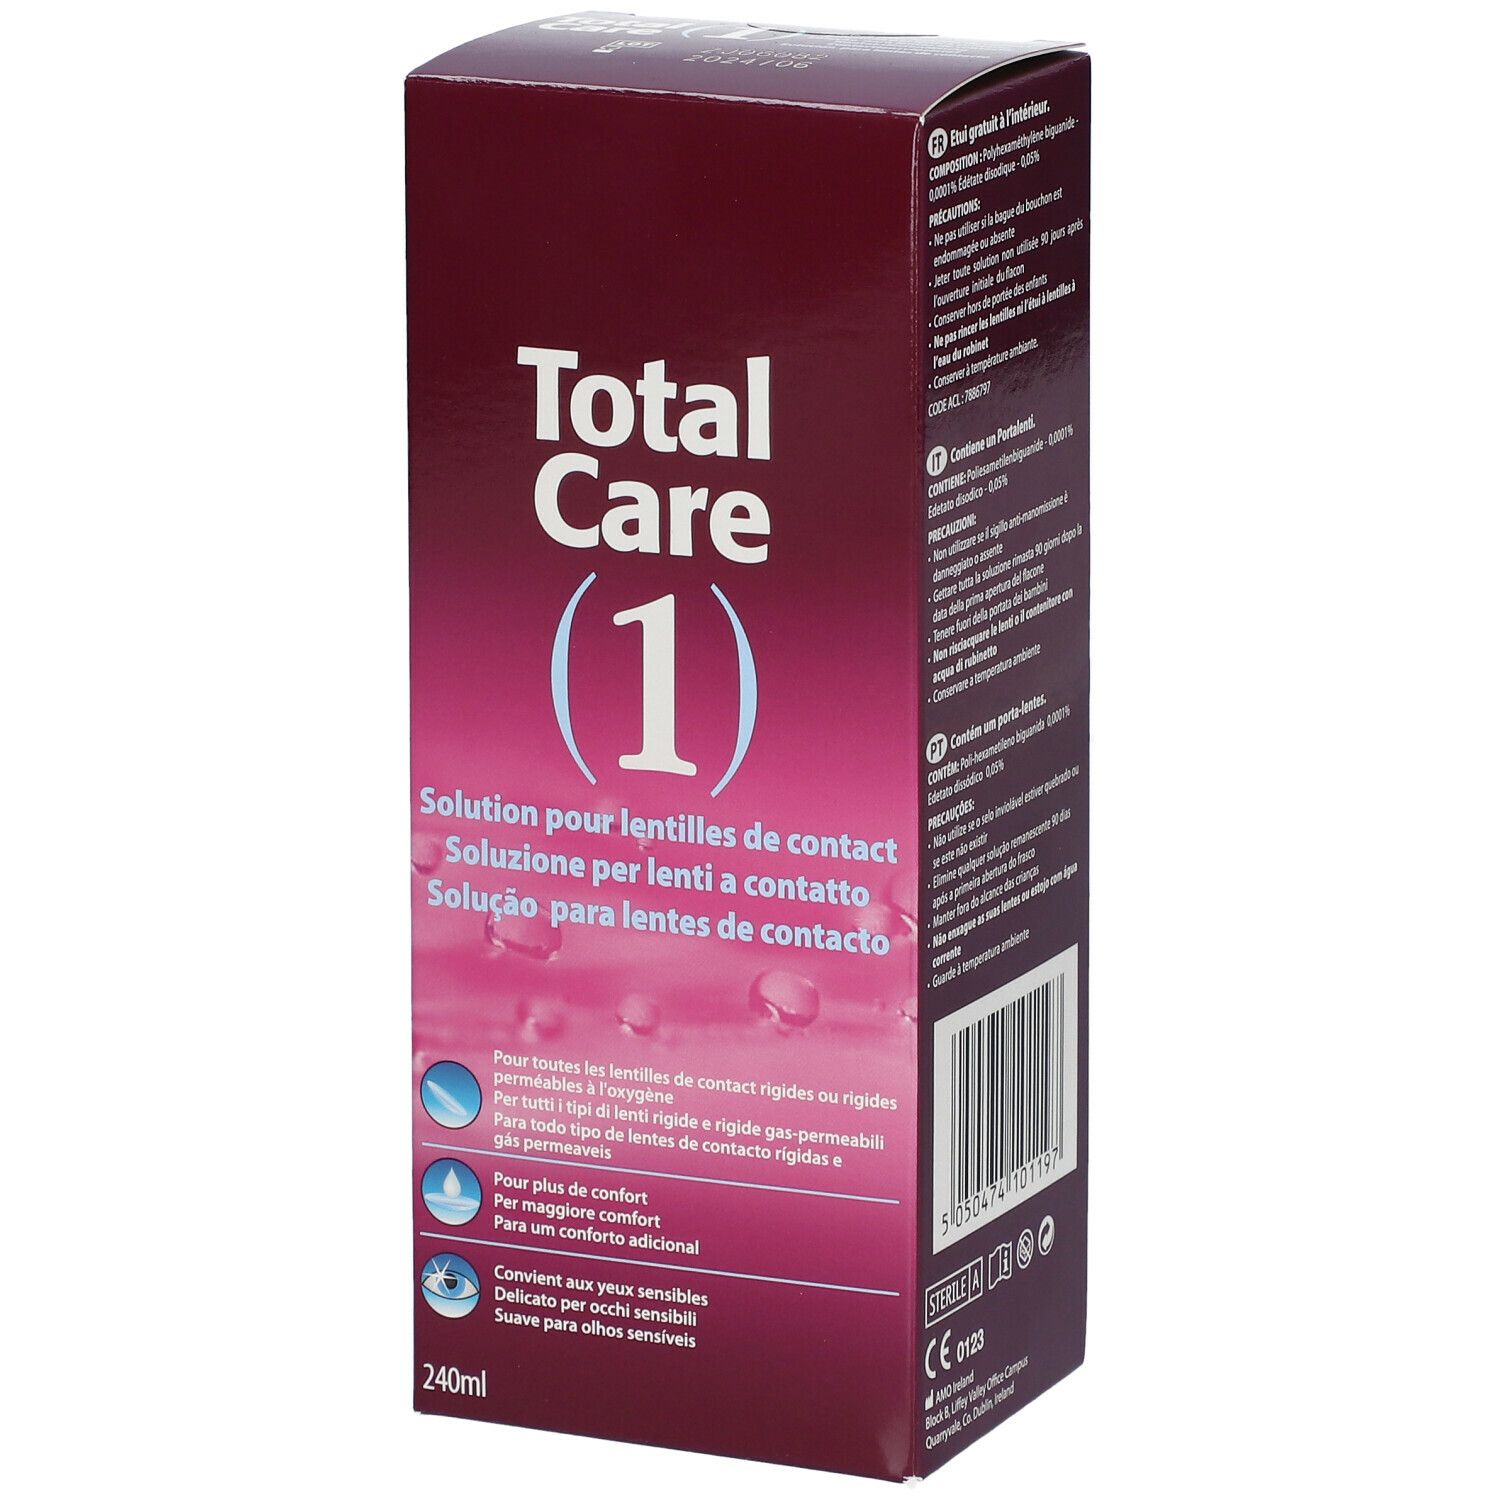 Total Care 1 All-In-One Solution pour lentilles de contact + Etui à lentilles